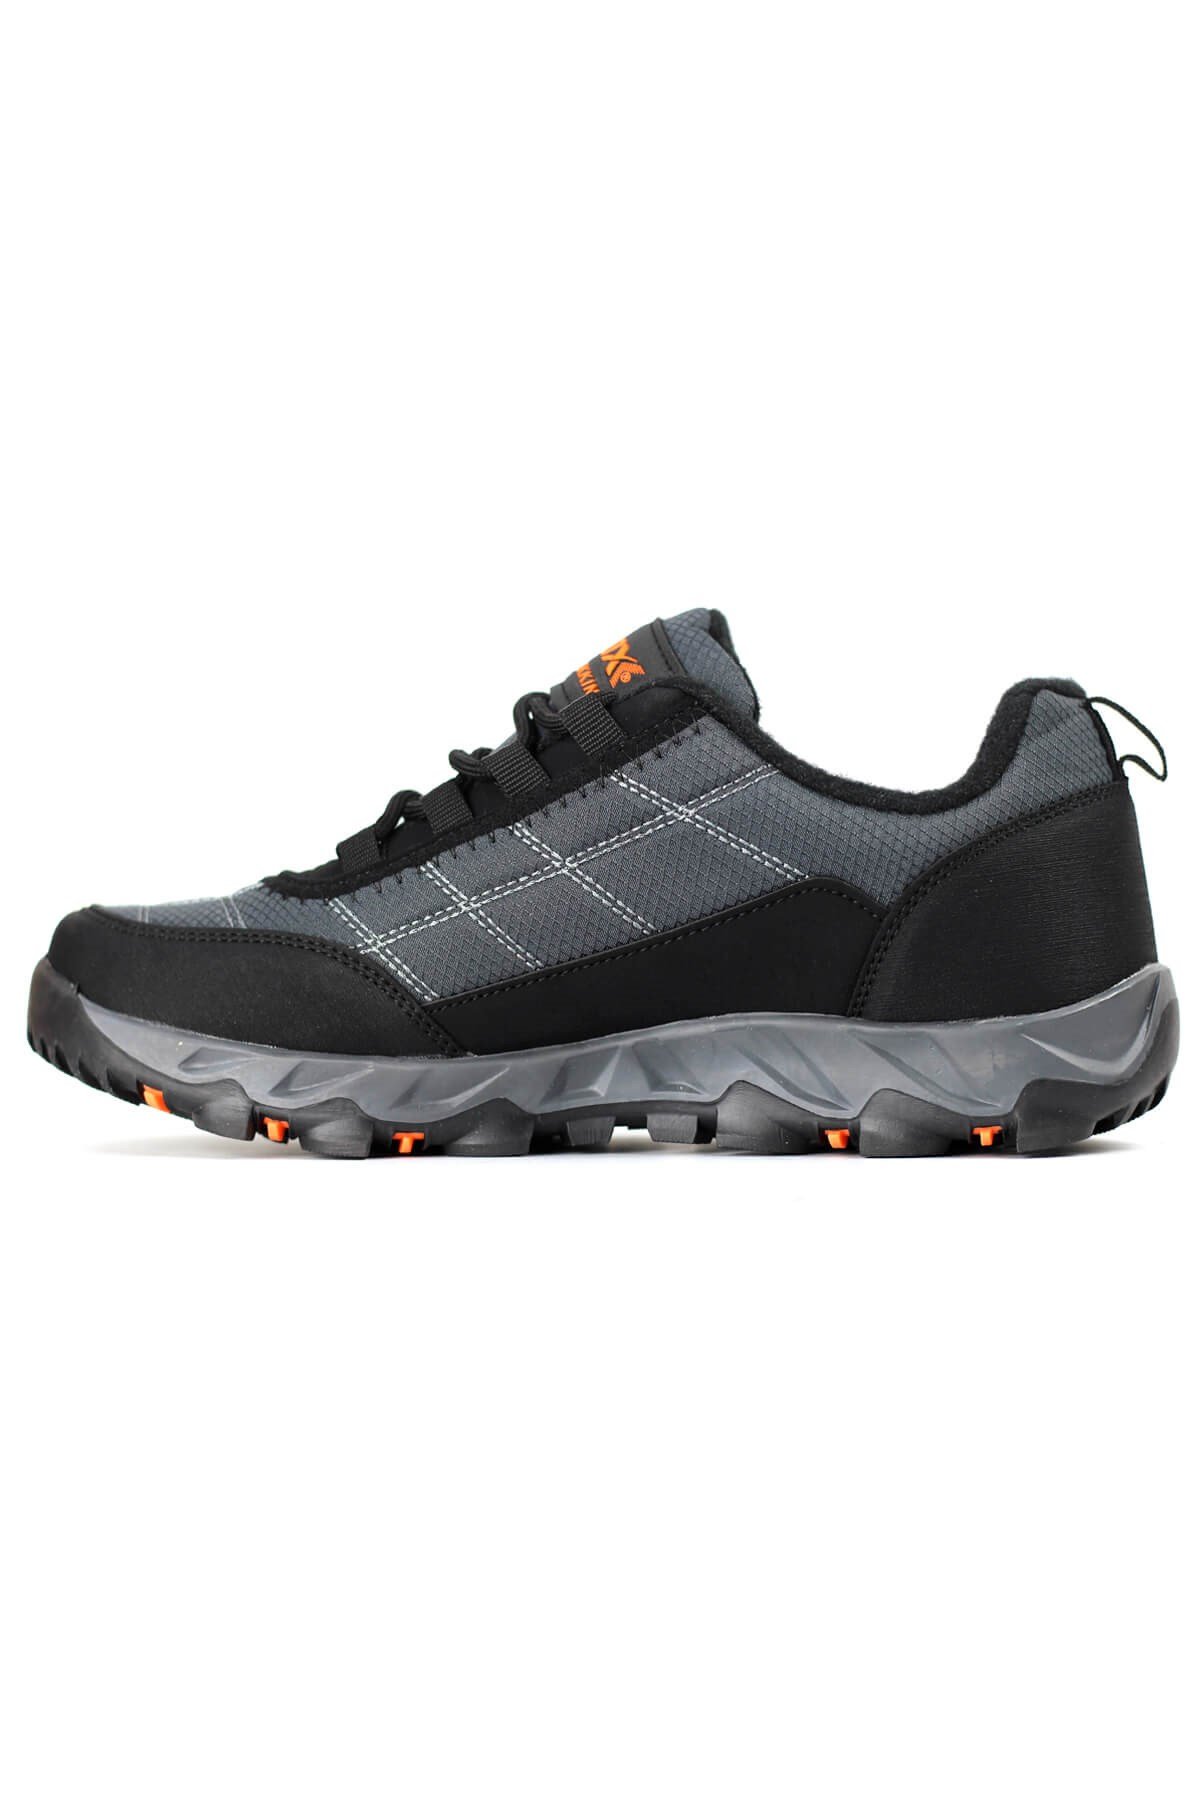 Awidox Outdoor Spor Yürüyüş Ayakkabısı Erkek 1080 Füme O58M0A1080-Füme  229,90 TL Tüm ürünlerde %25 indirim